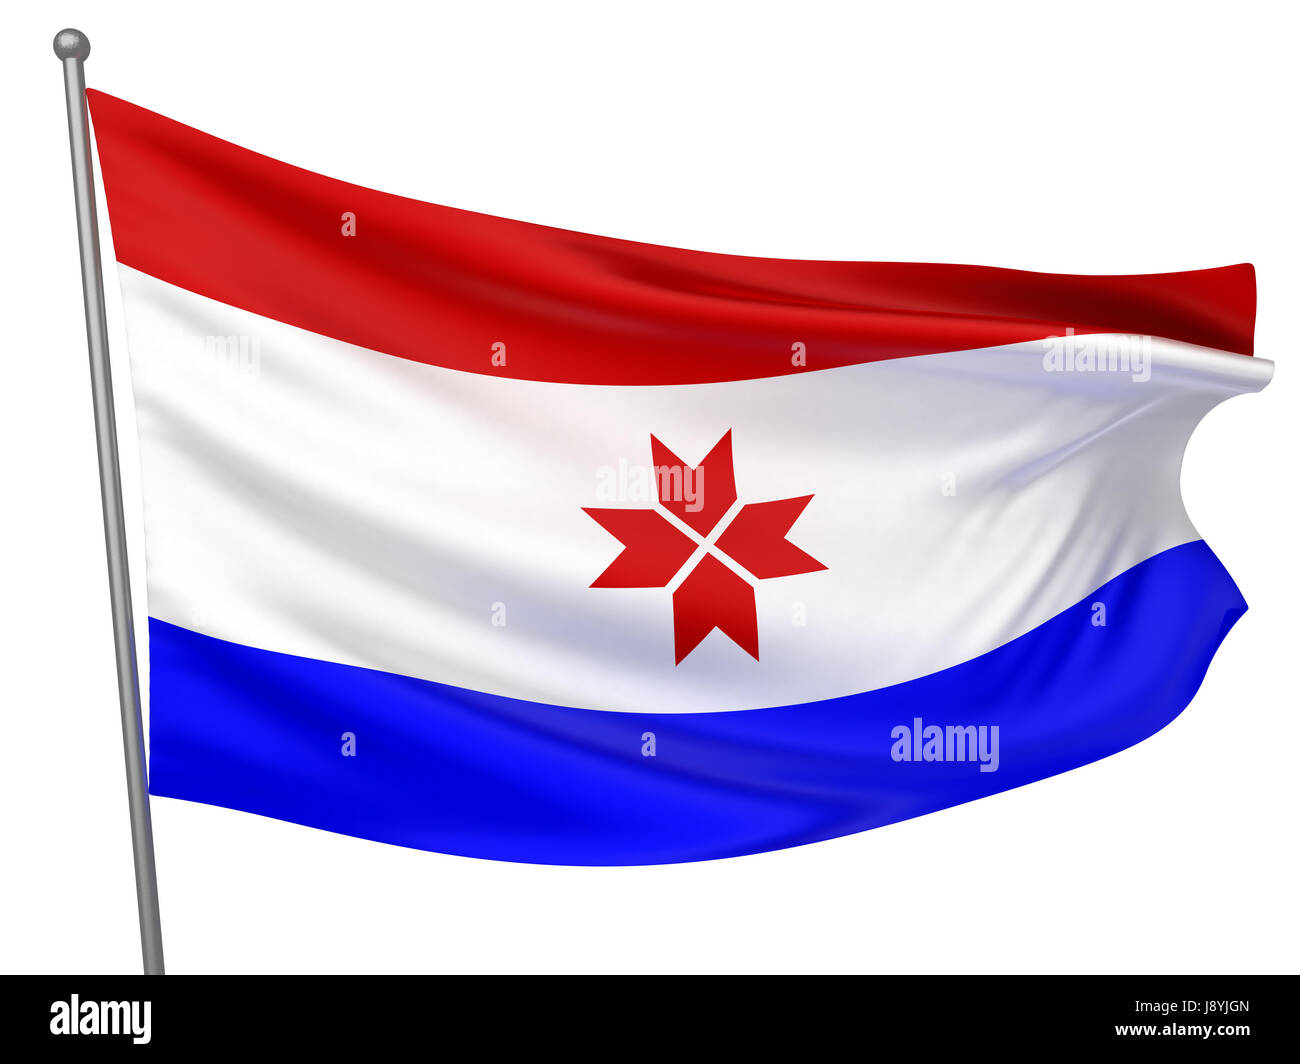 isolated, symbolic, colour, emblem, illustration, flag, banner, national, Stock Photo